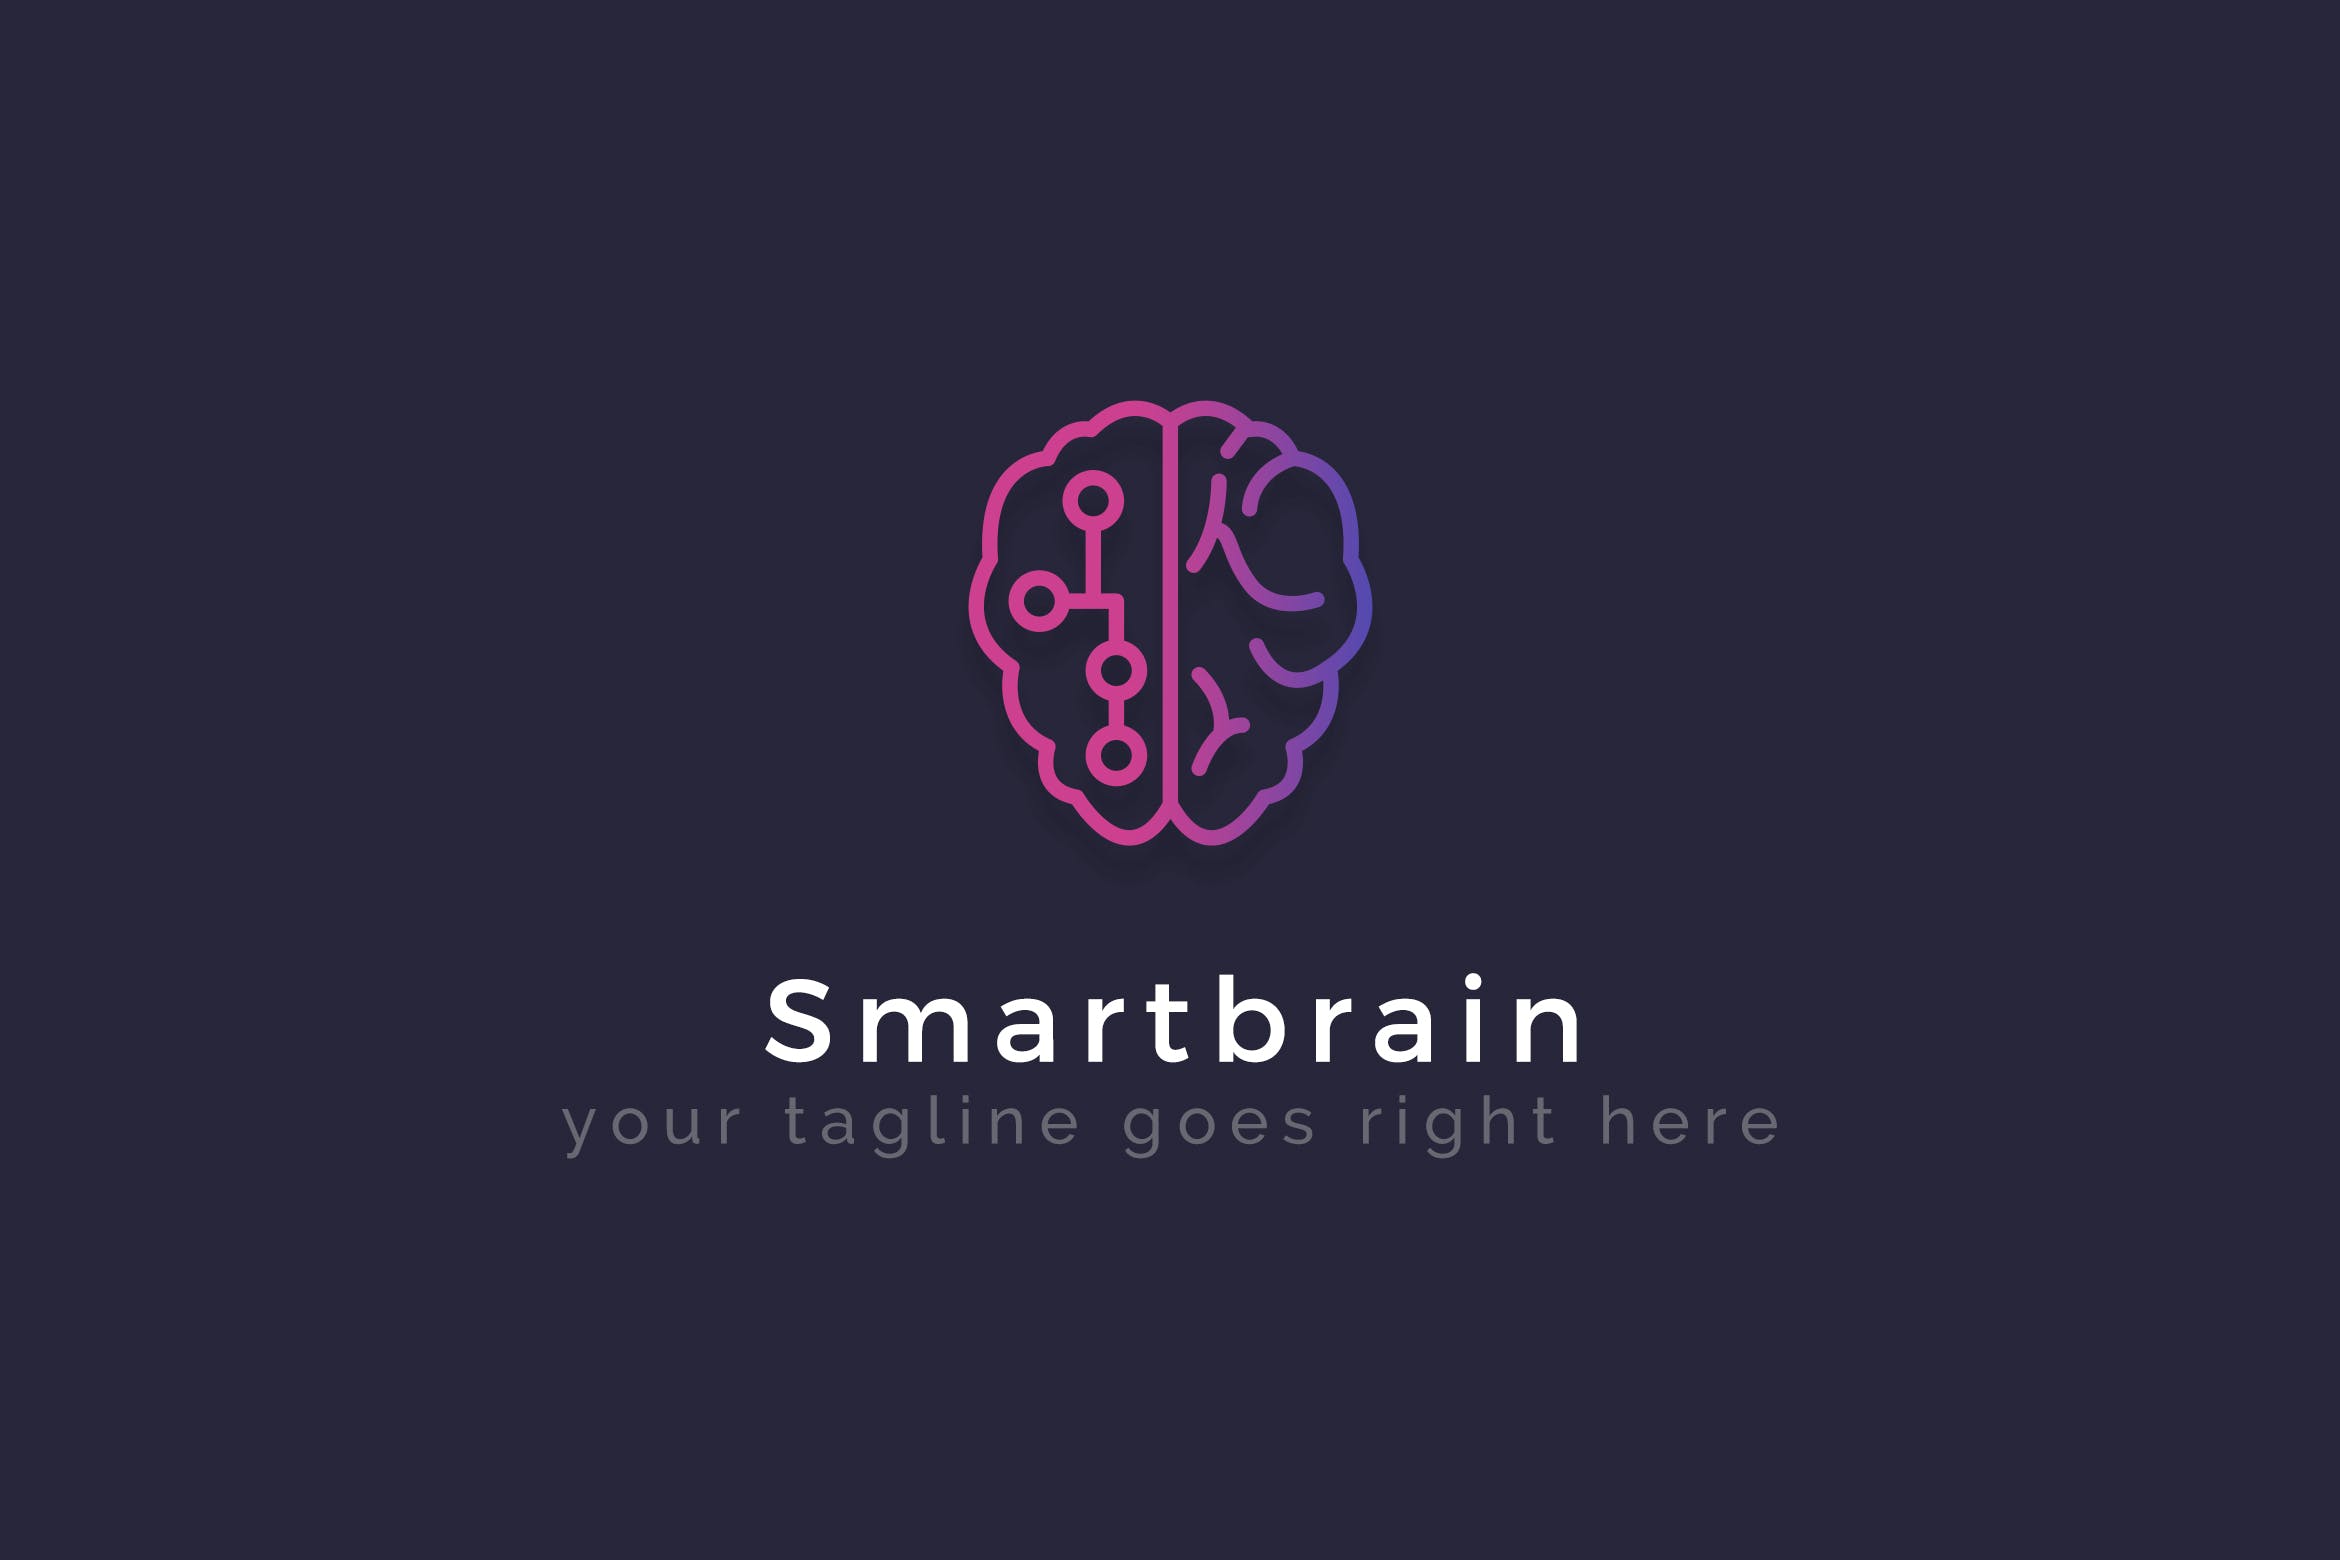 智能大脑AI品牌Logo设计16图库精选模板 Smartbrain – Creative Logo Template插图